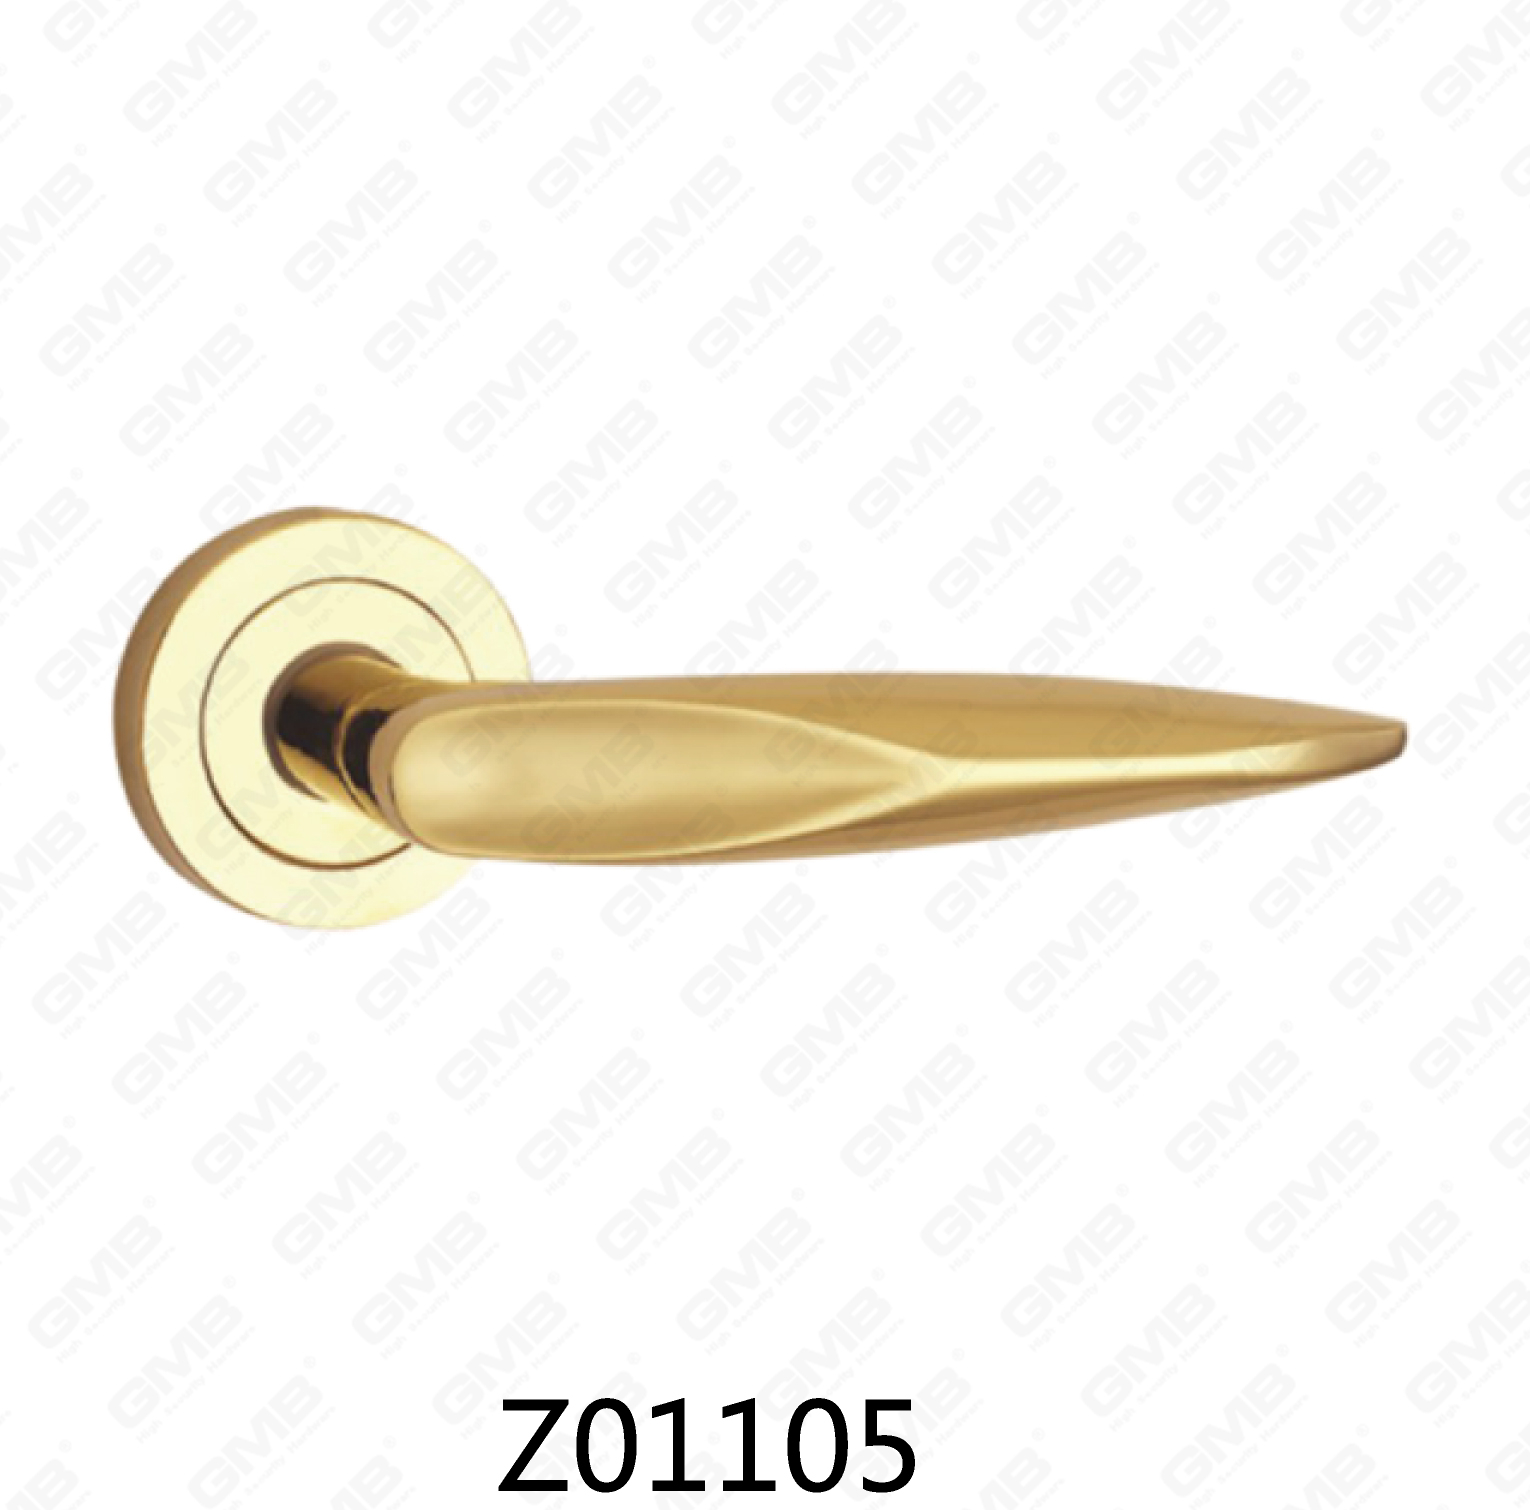 ידית דלת רוזטת אלומיניום מסגסוגת אבץ של Zamak עם רוזטה עגולה (Z01105)